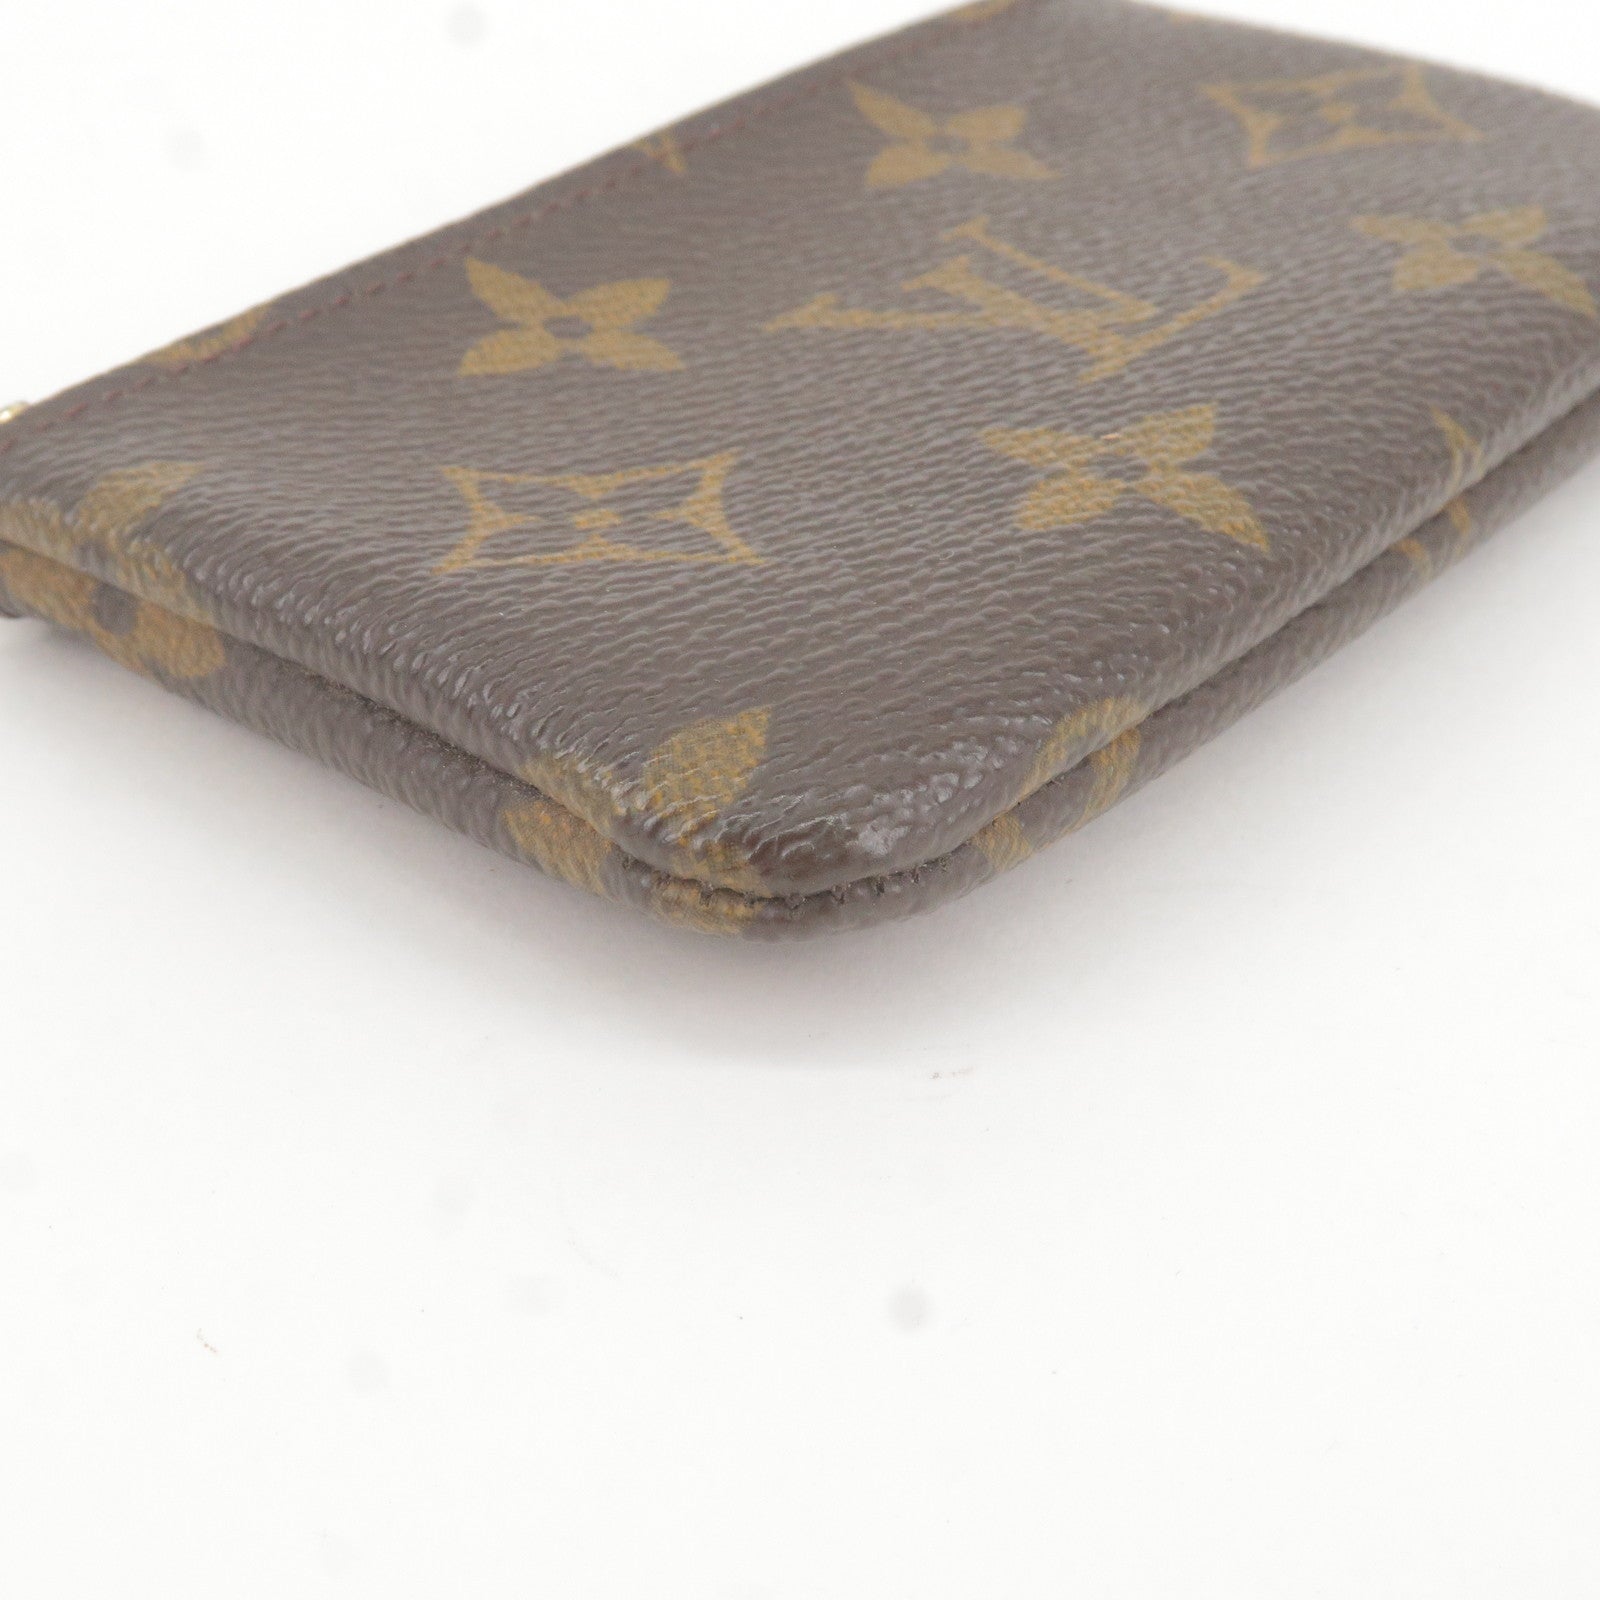 Louis Vuitton x Supreme Purses, wallets & cases for Women